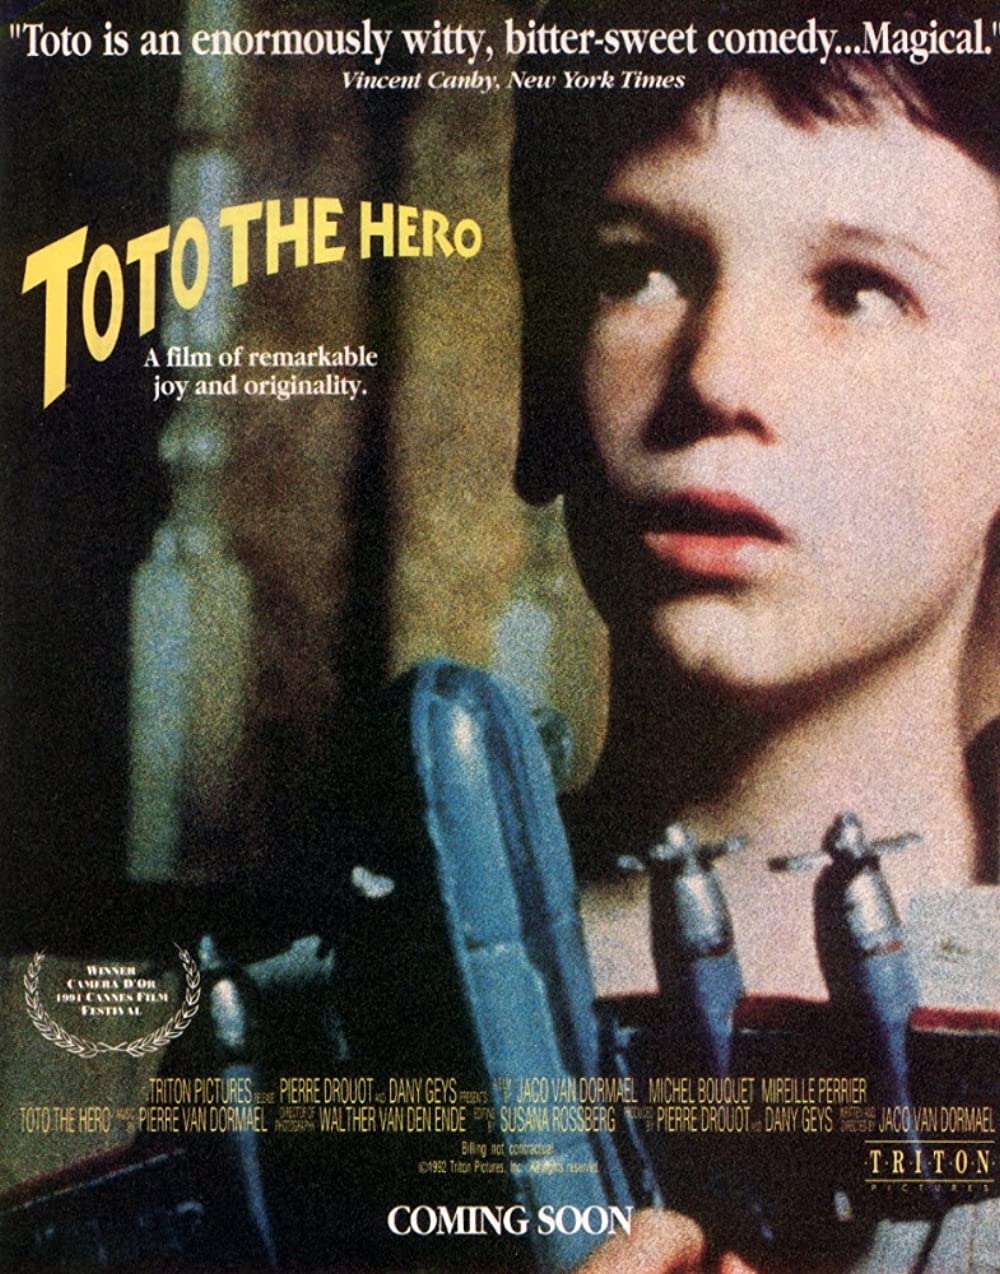 Filmbeschreibung zu Toto der Held